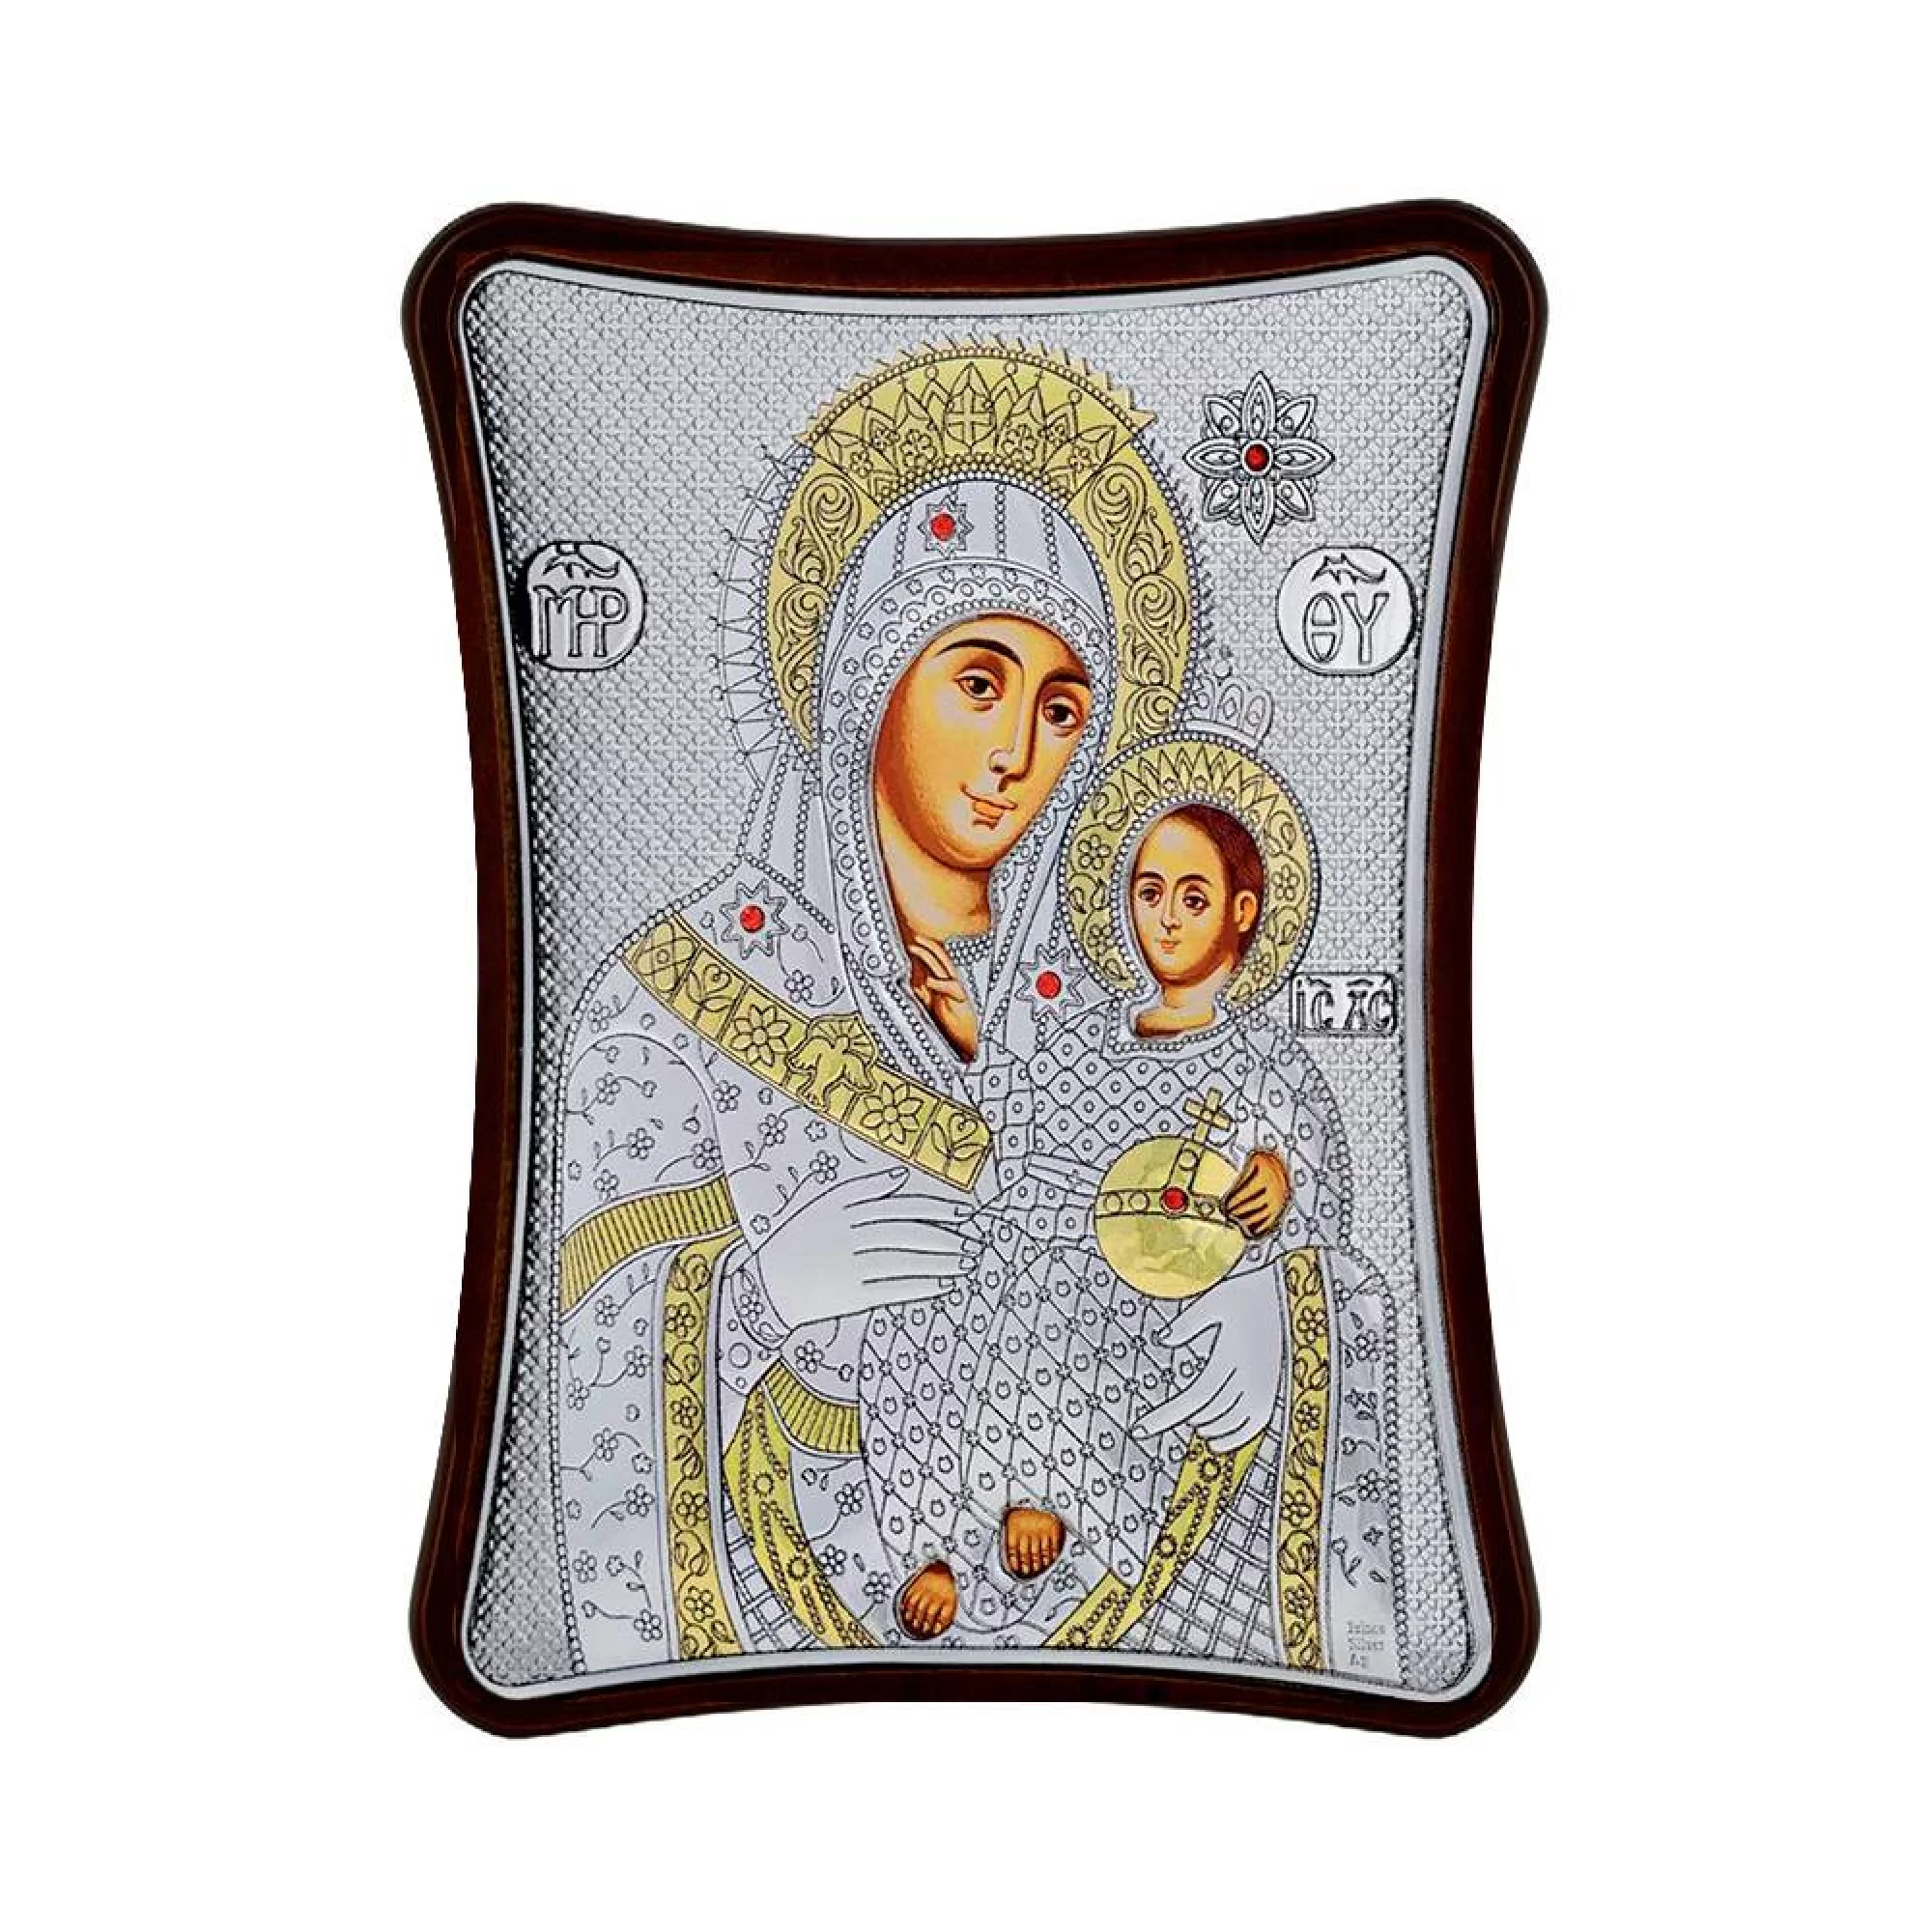 Серебряная икона Богородица "Вифлеемская" 150х120 мм - 1593193 – изображение 1